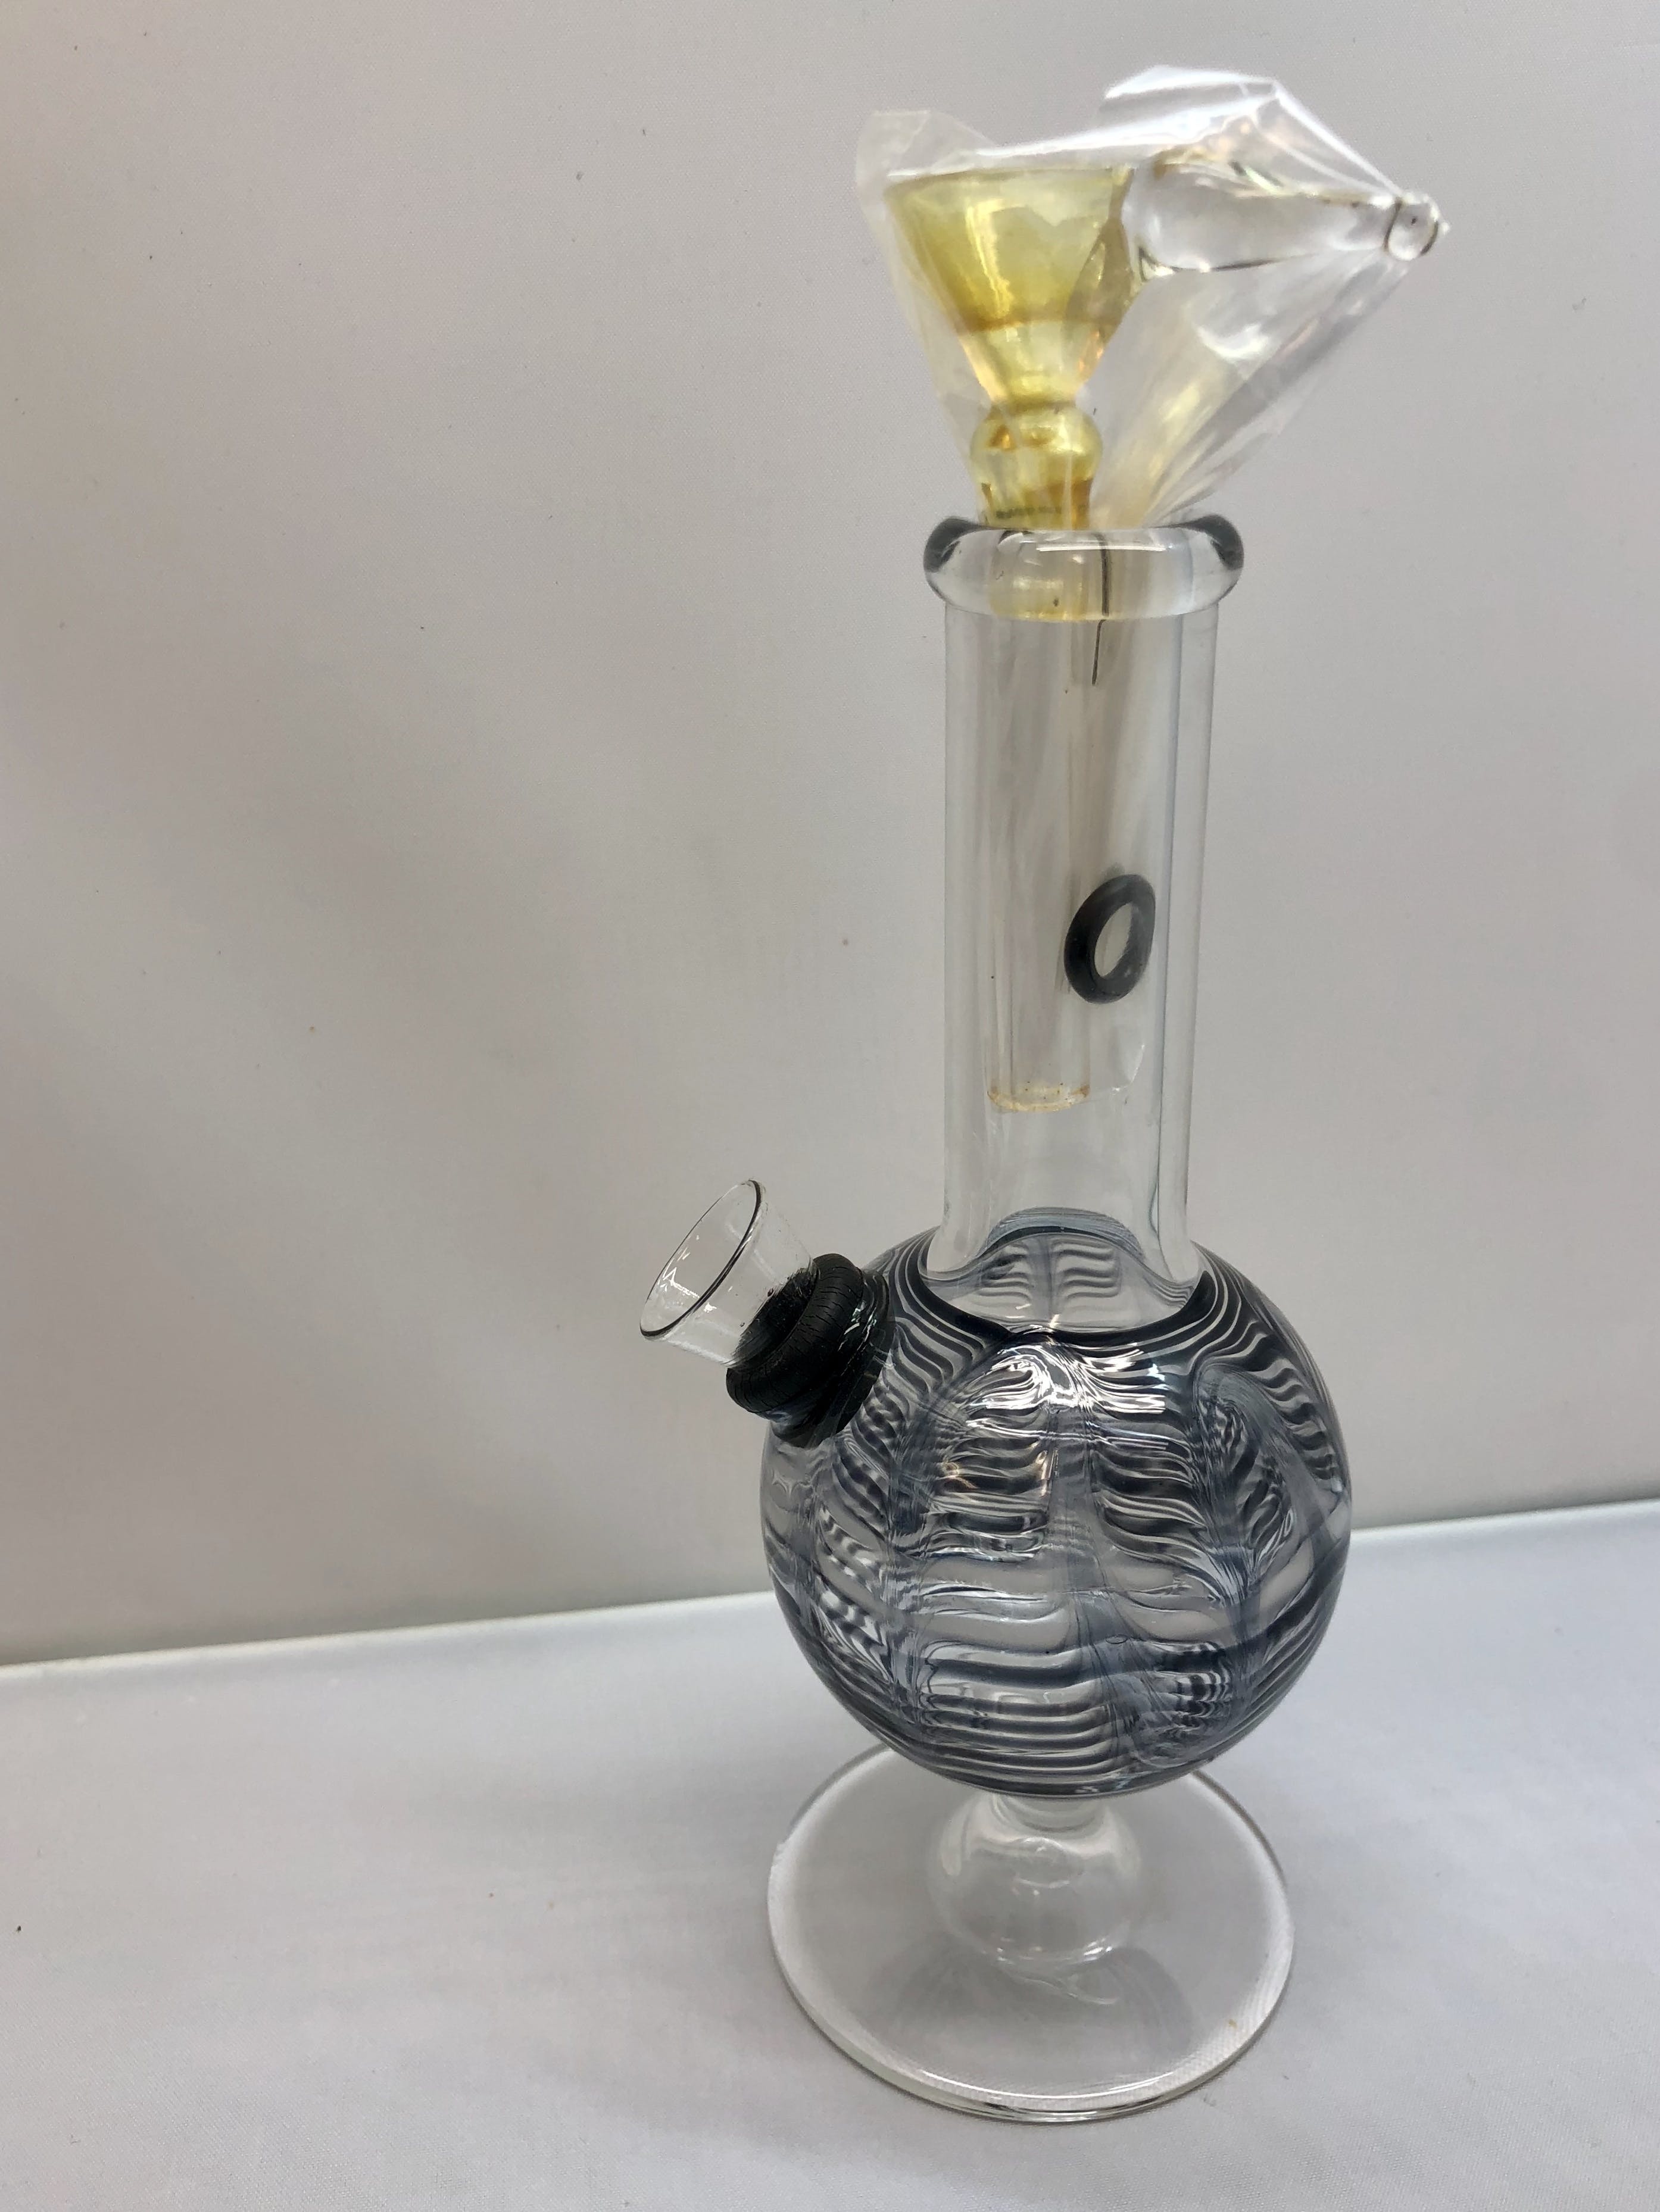 marijuana-dispensaries-92-pullman-way-san-jose-7-art-design-glass-water-pipe